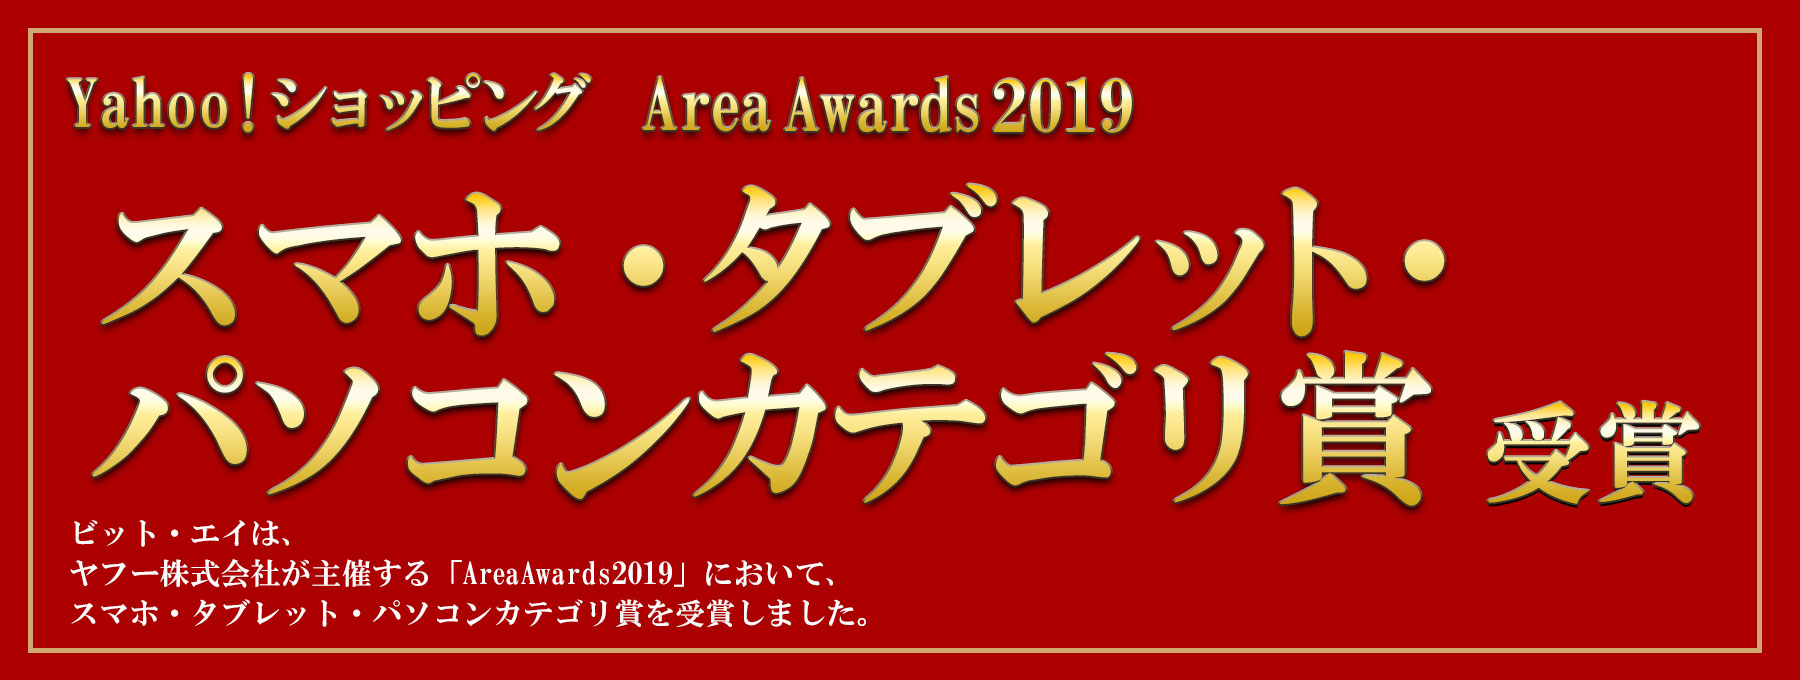 Area Awards 2019